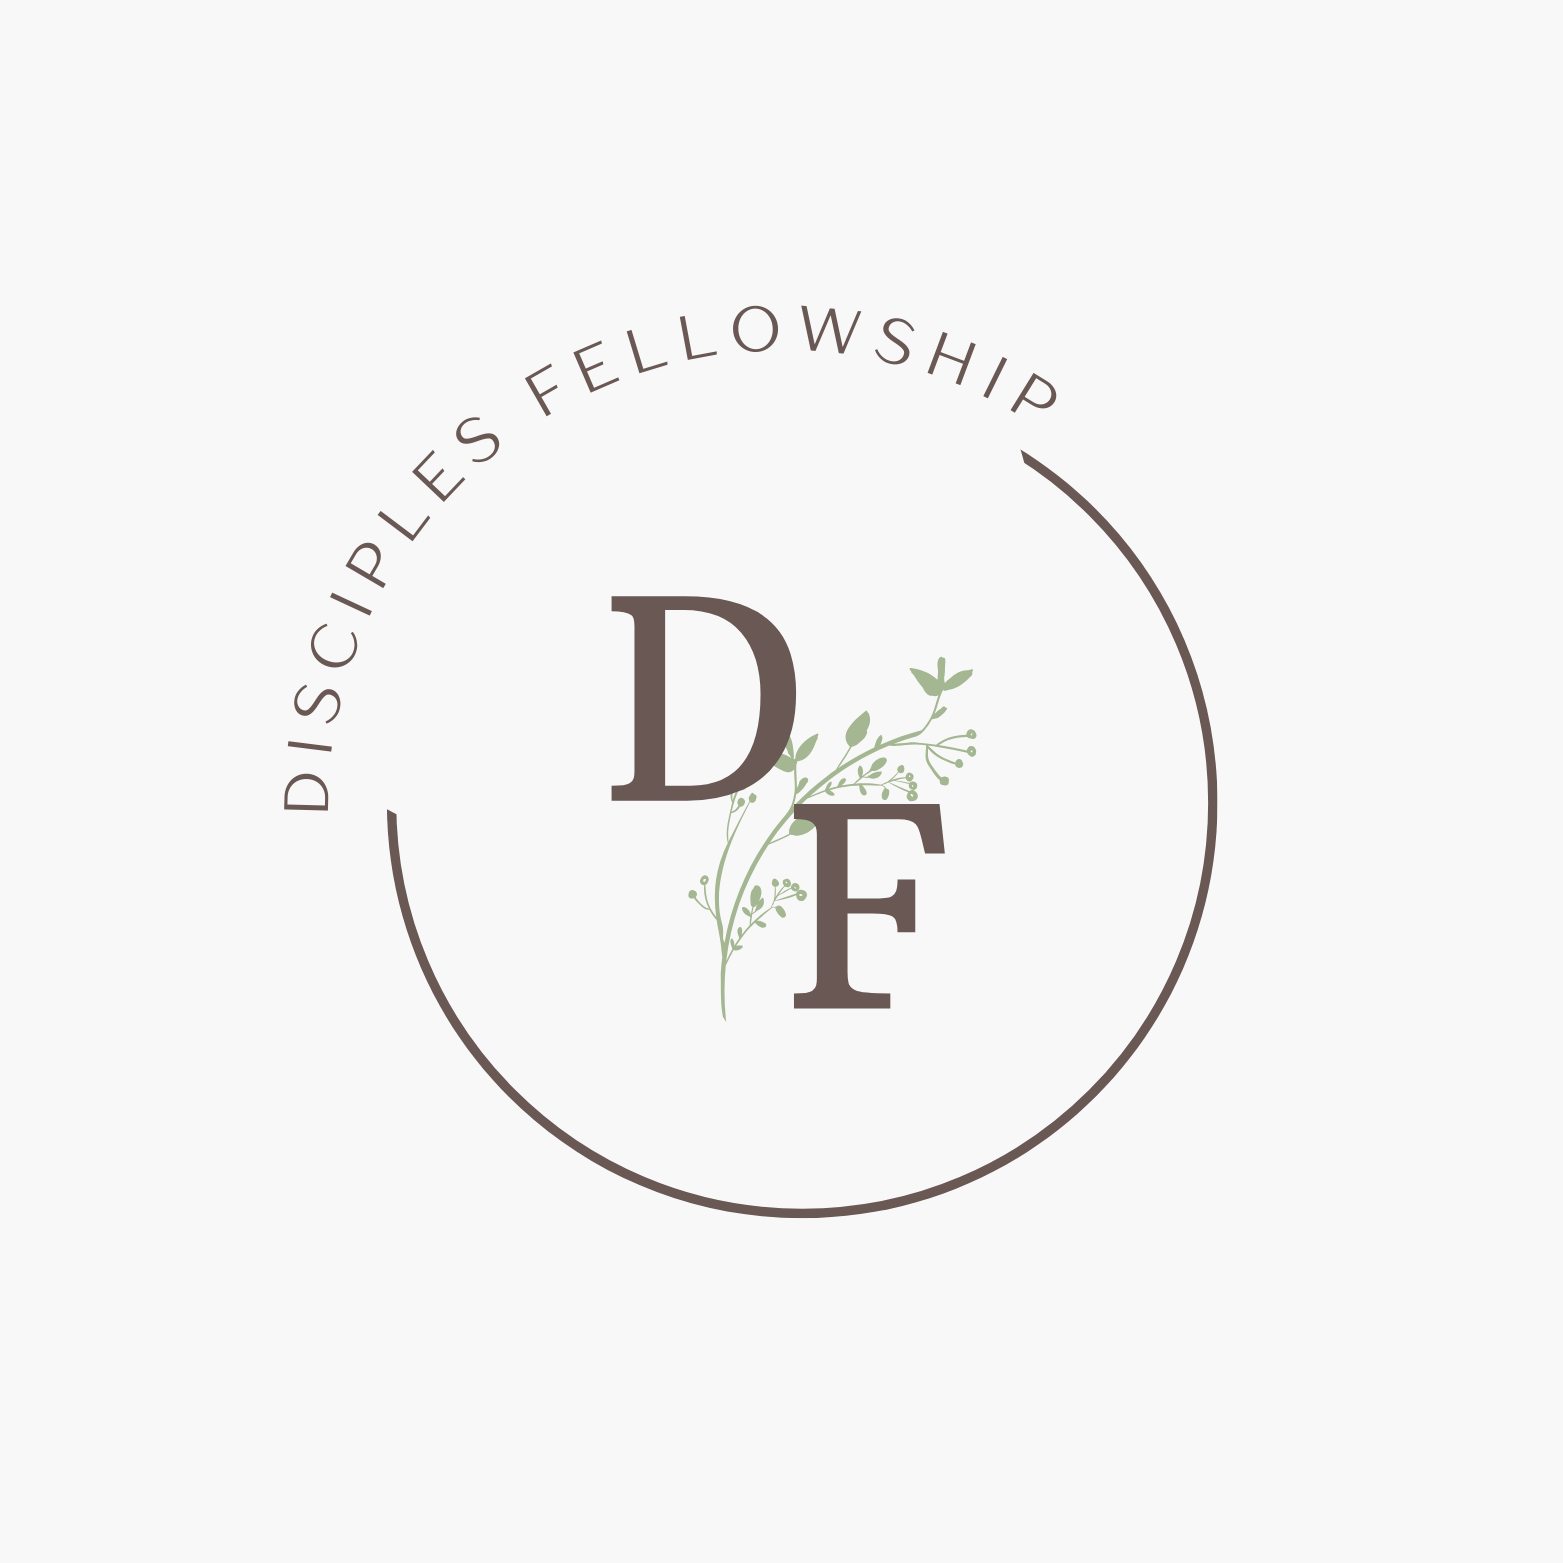 Disciples Fellowship